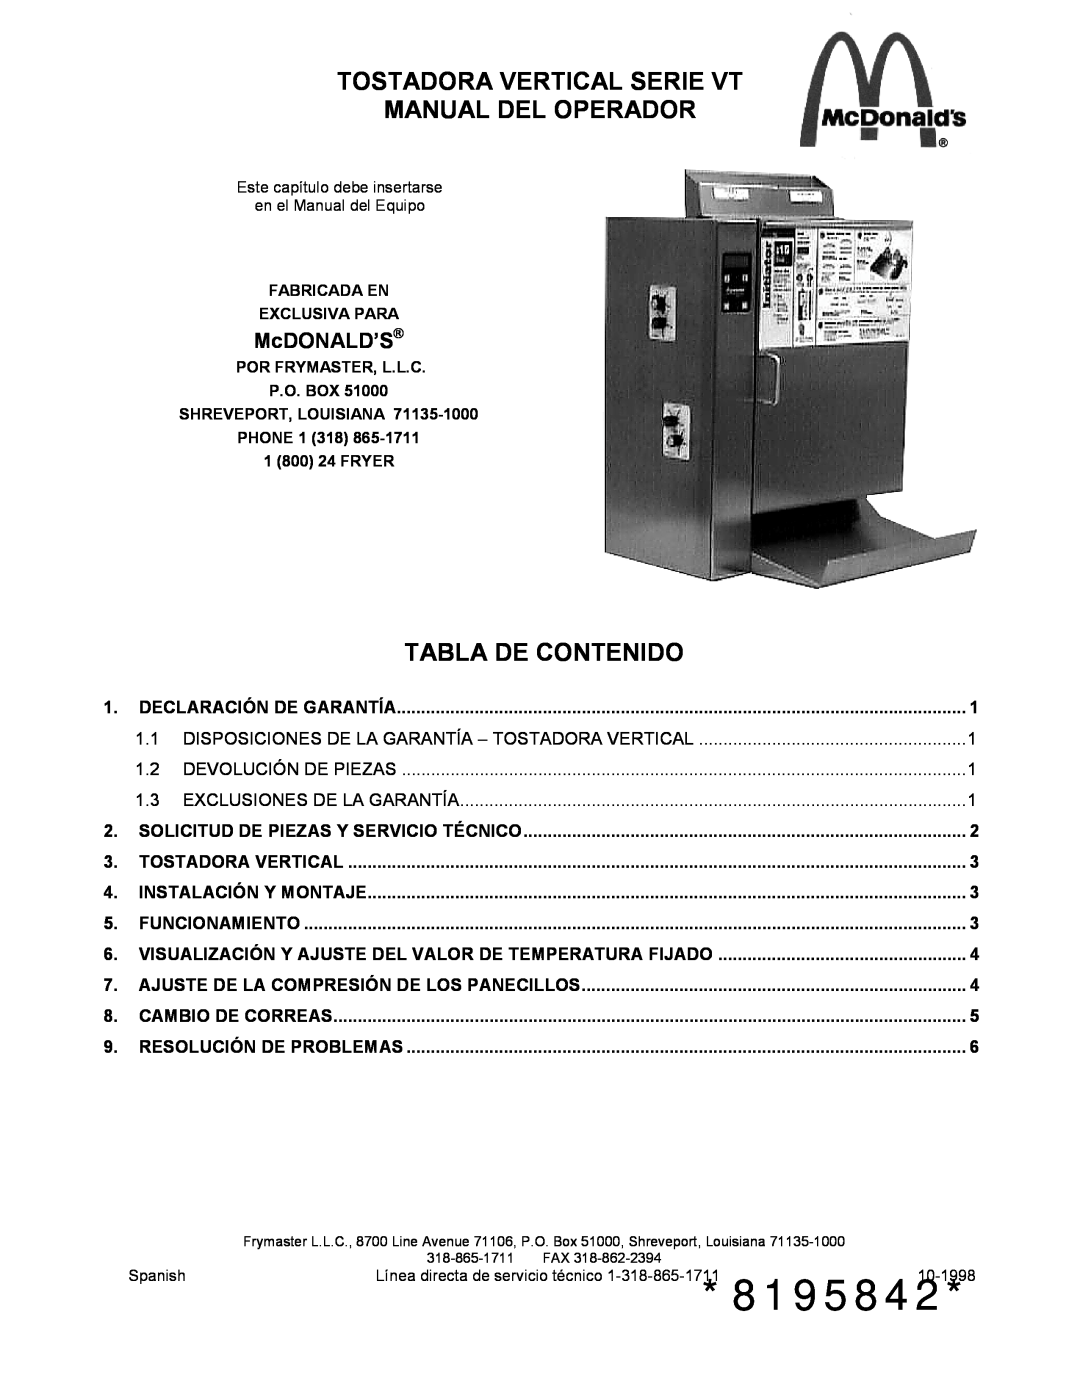 Frymaster VT Series manual McDONALD’S, 8195842, Tostadora Vertical Serie Vt Manual Del Operador, Tabla De Contenido 